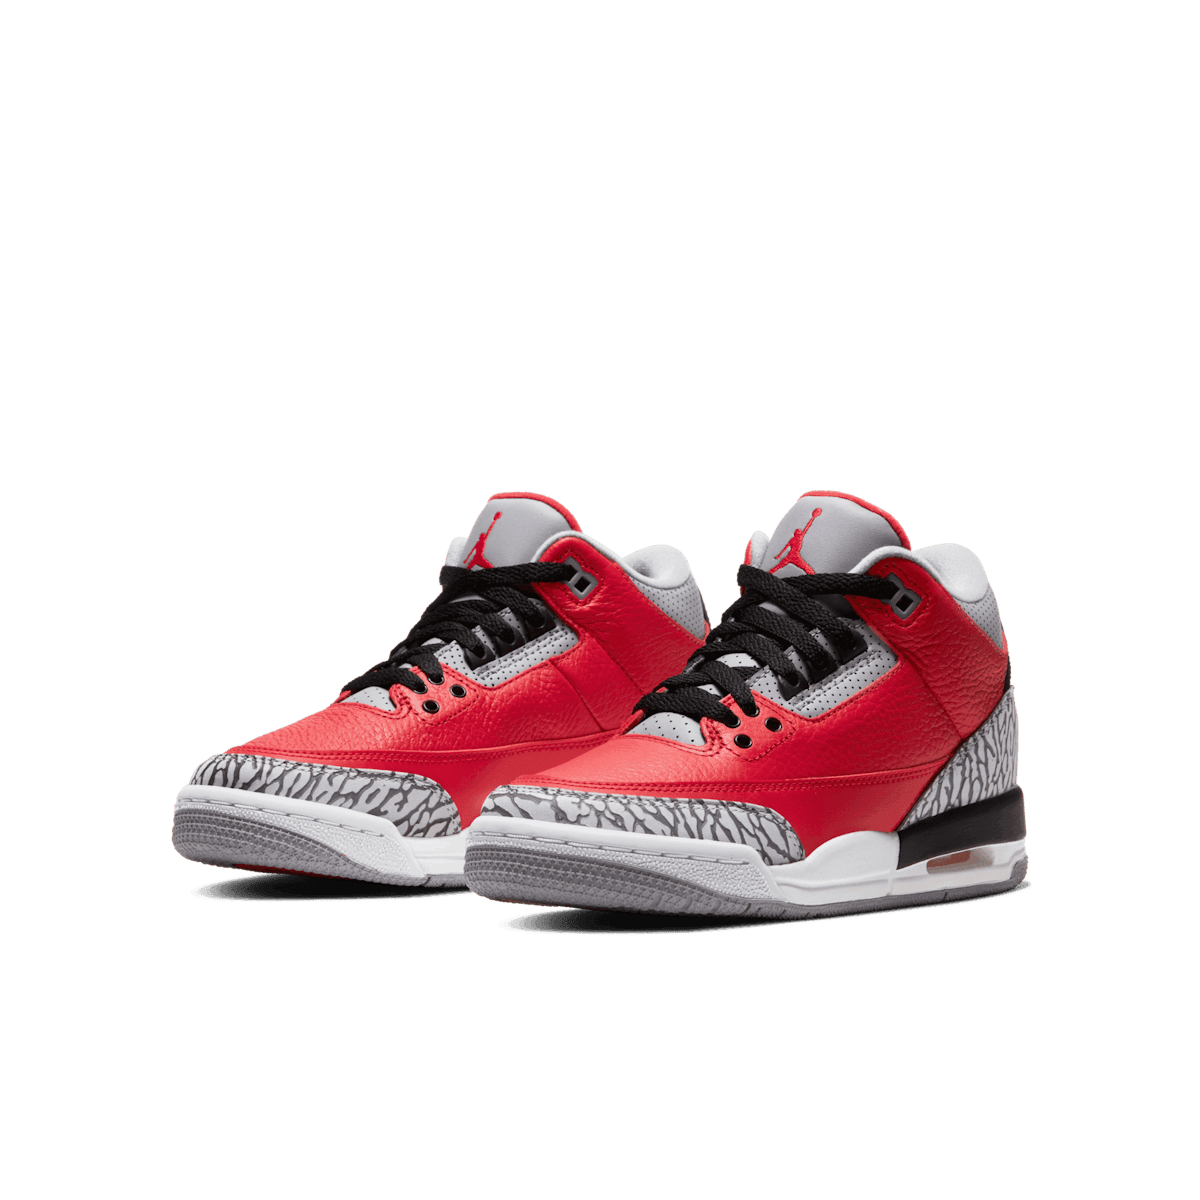 Air Jordan 3 Retro SE Fire Red (GS) Angle 2